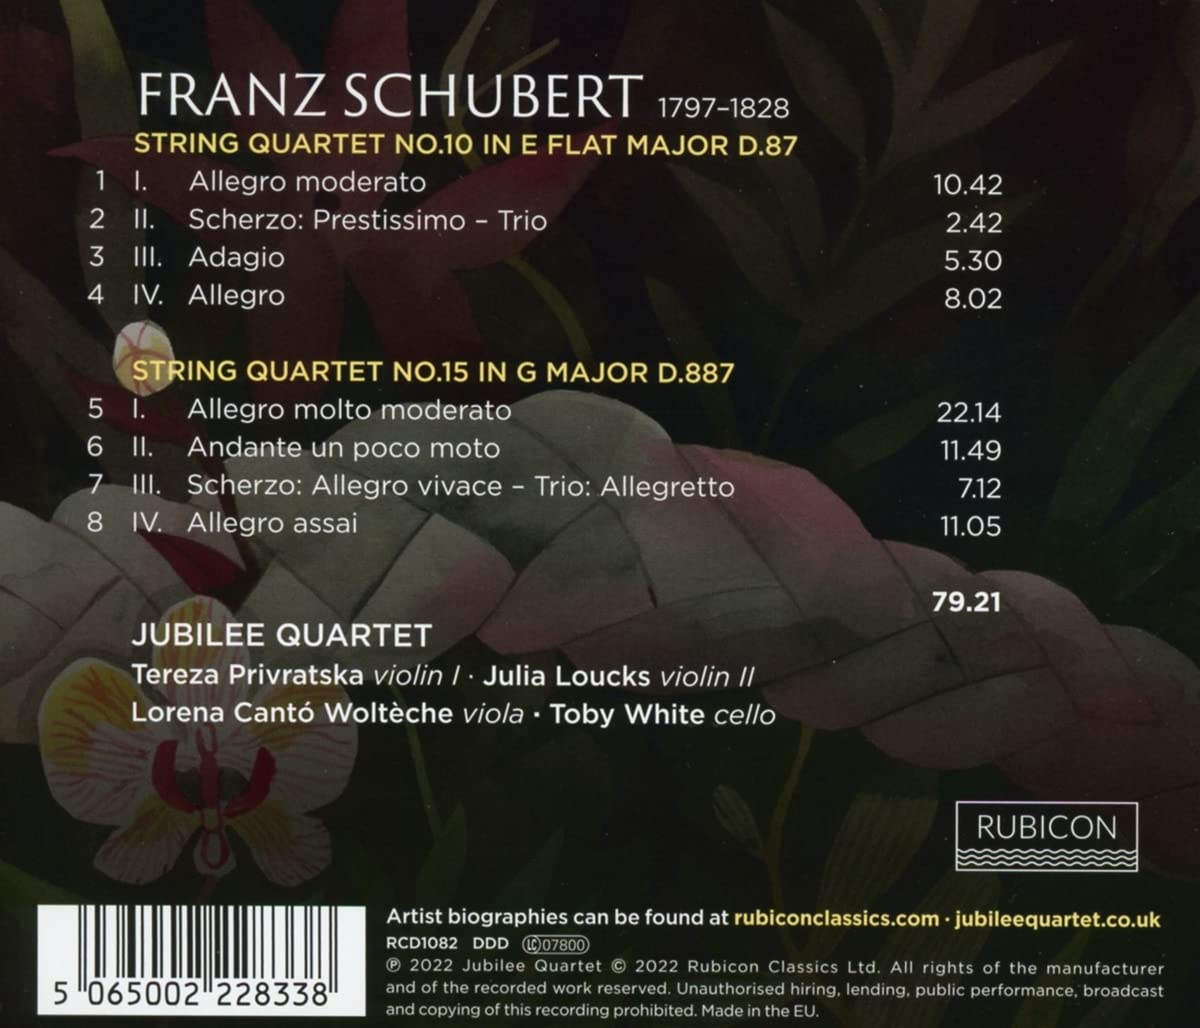 Jubilee Quartet 슈베르트: 현악 사중주 10번, 5번 (Schubert: String Quartets D.87, D.887)